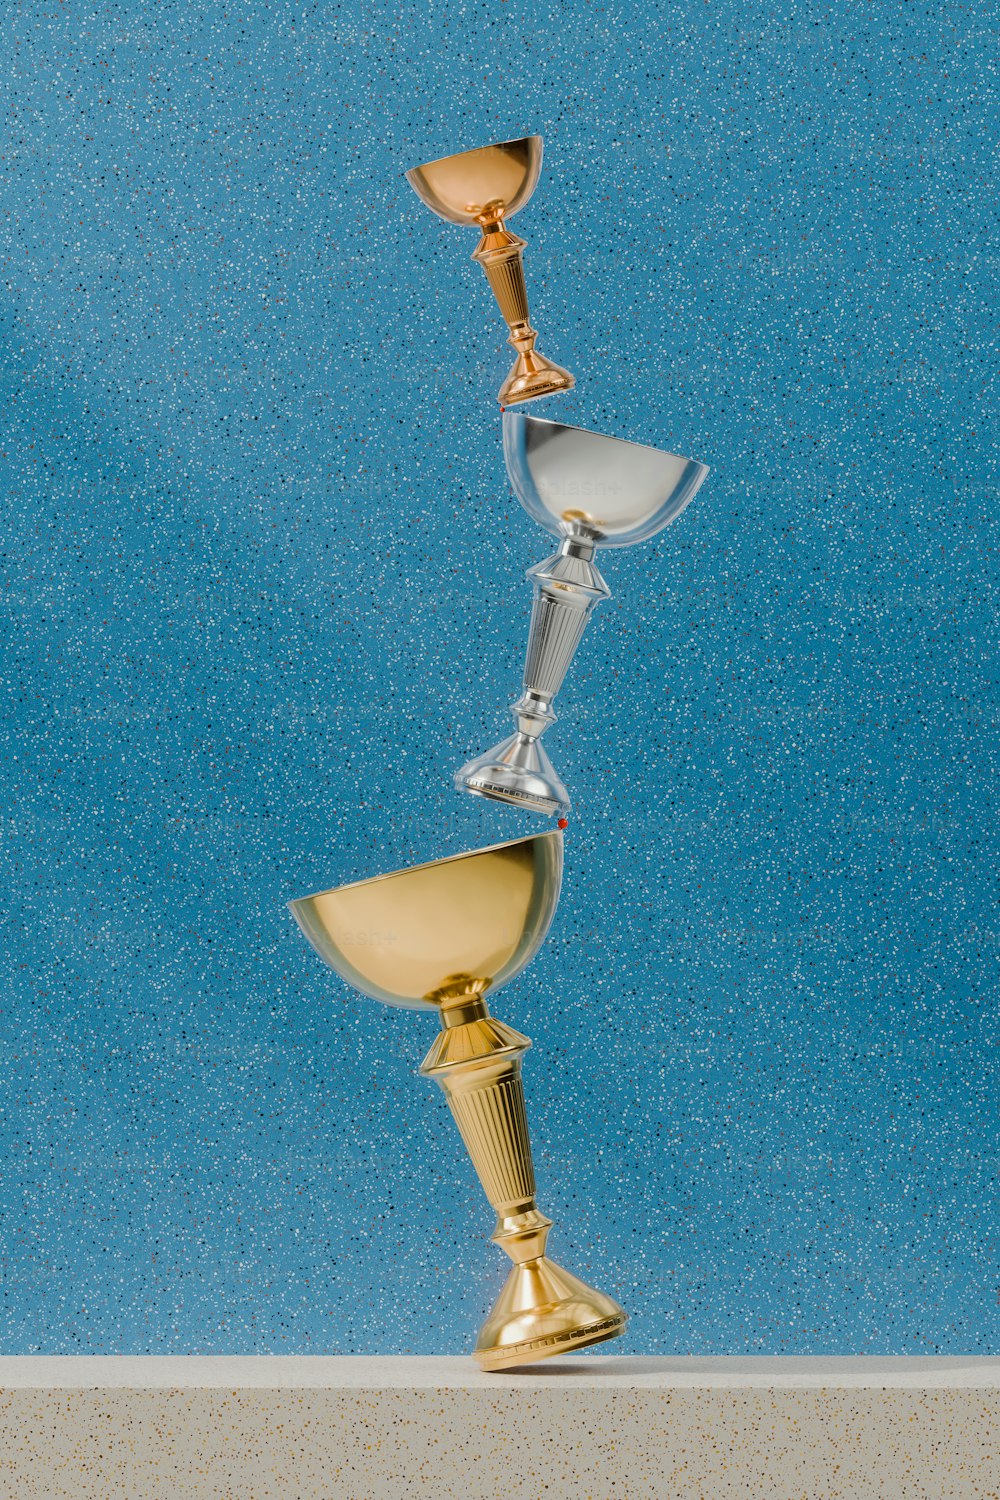 금 잔과 은 잔을 탁자 위에 올려 놓았다